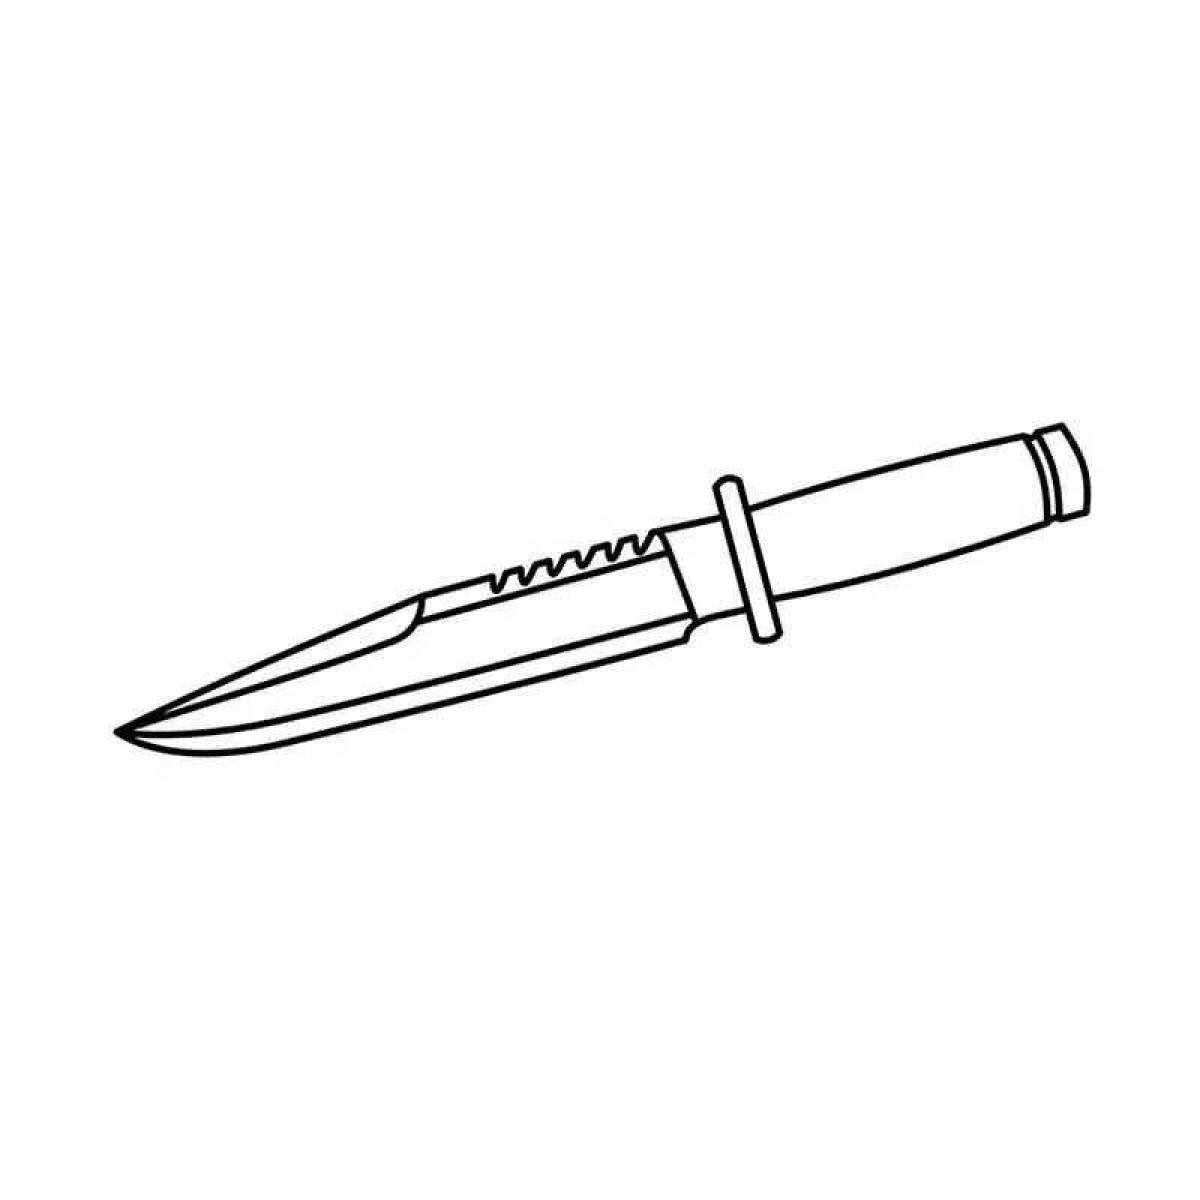 Раскраски стендофф ножи. Нож м9 байонет чертеж. Нож м9 байонет раскраски. Раскраски стандофф 2 ножи м9 байонет. Штык нож м9 раскраска.